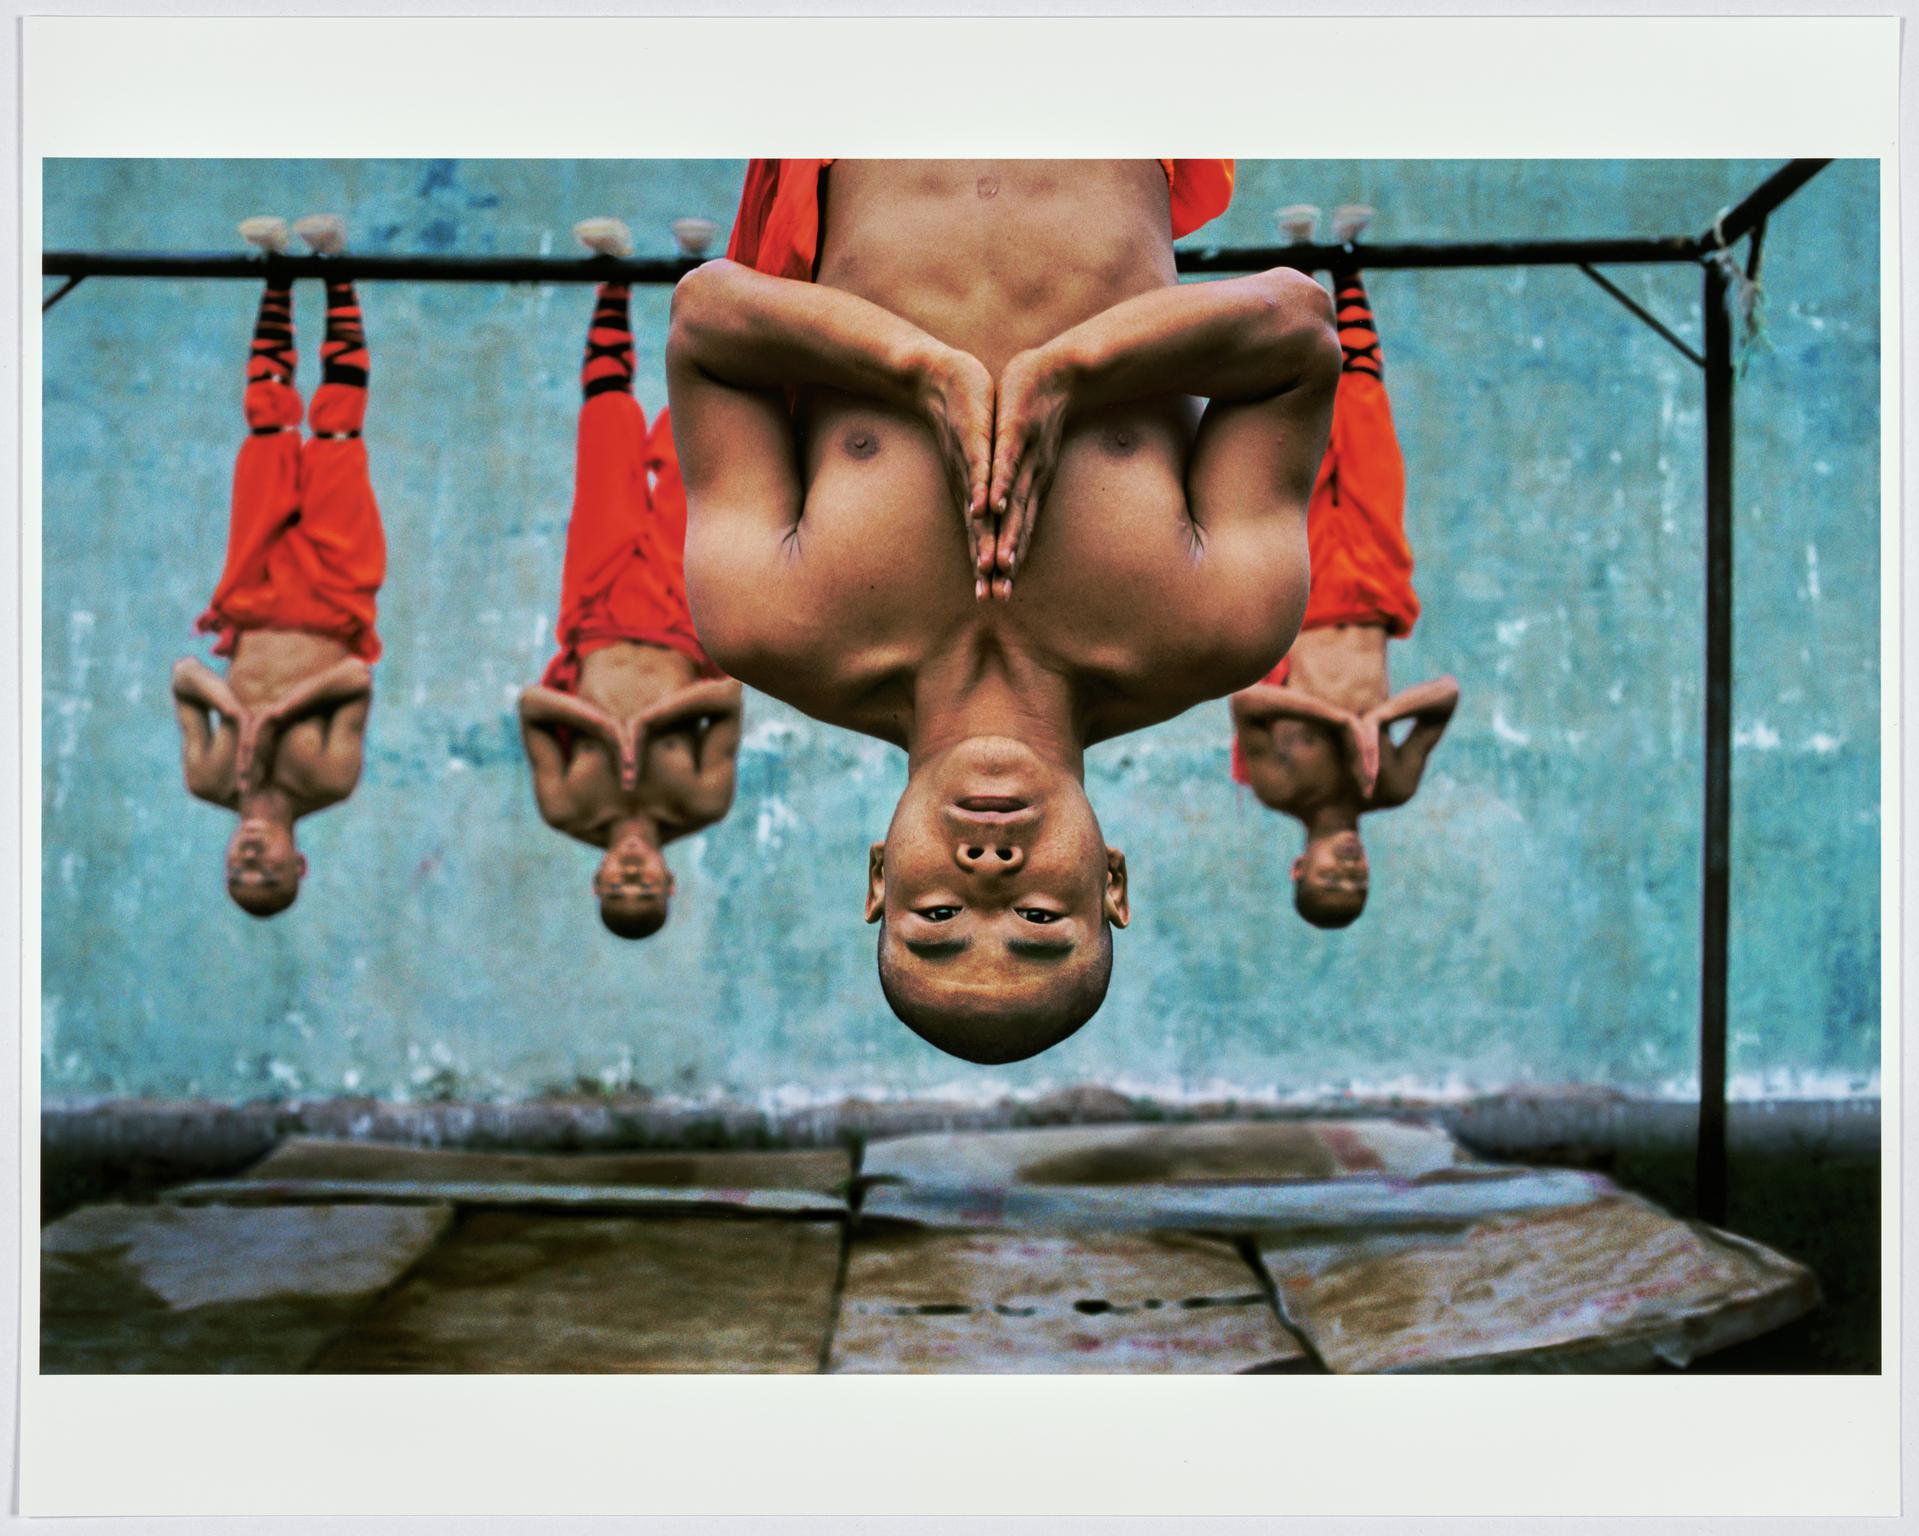 PiShaolin Monks training, Zhengzou, China